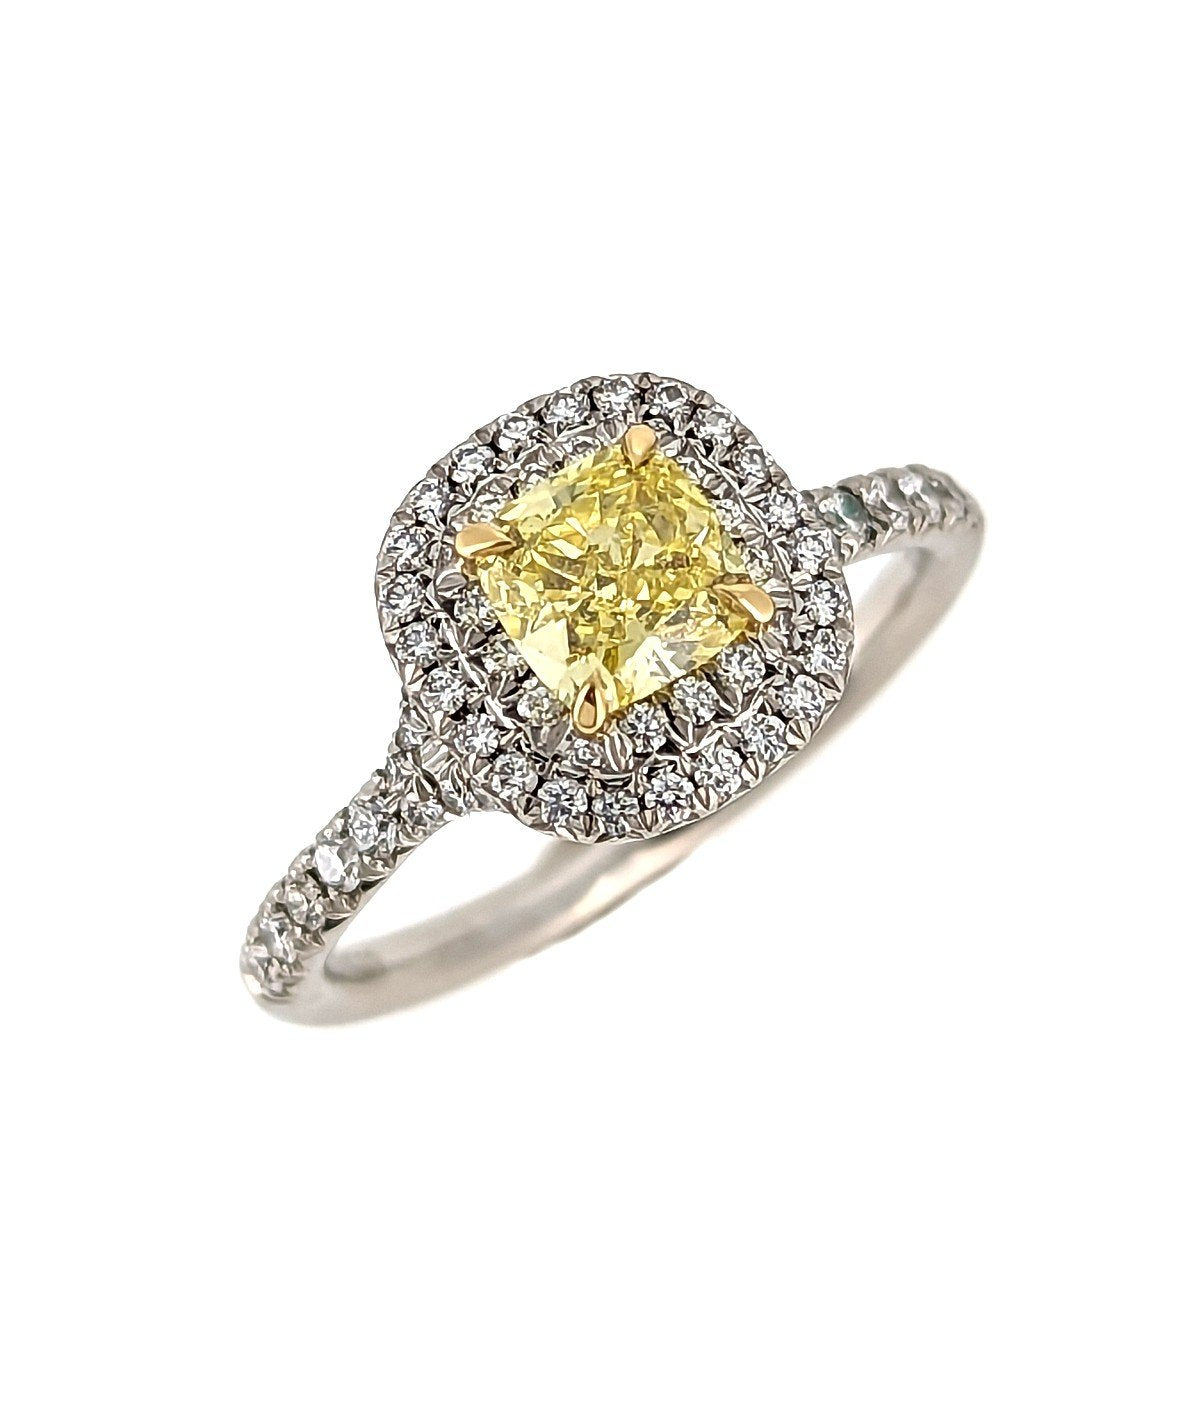 Buy Diamond Engagement Rings for Men and Women